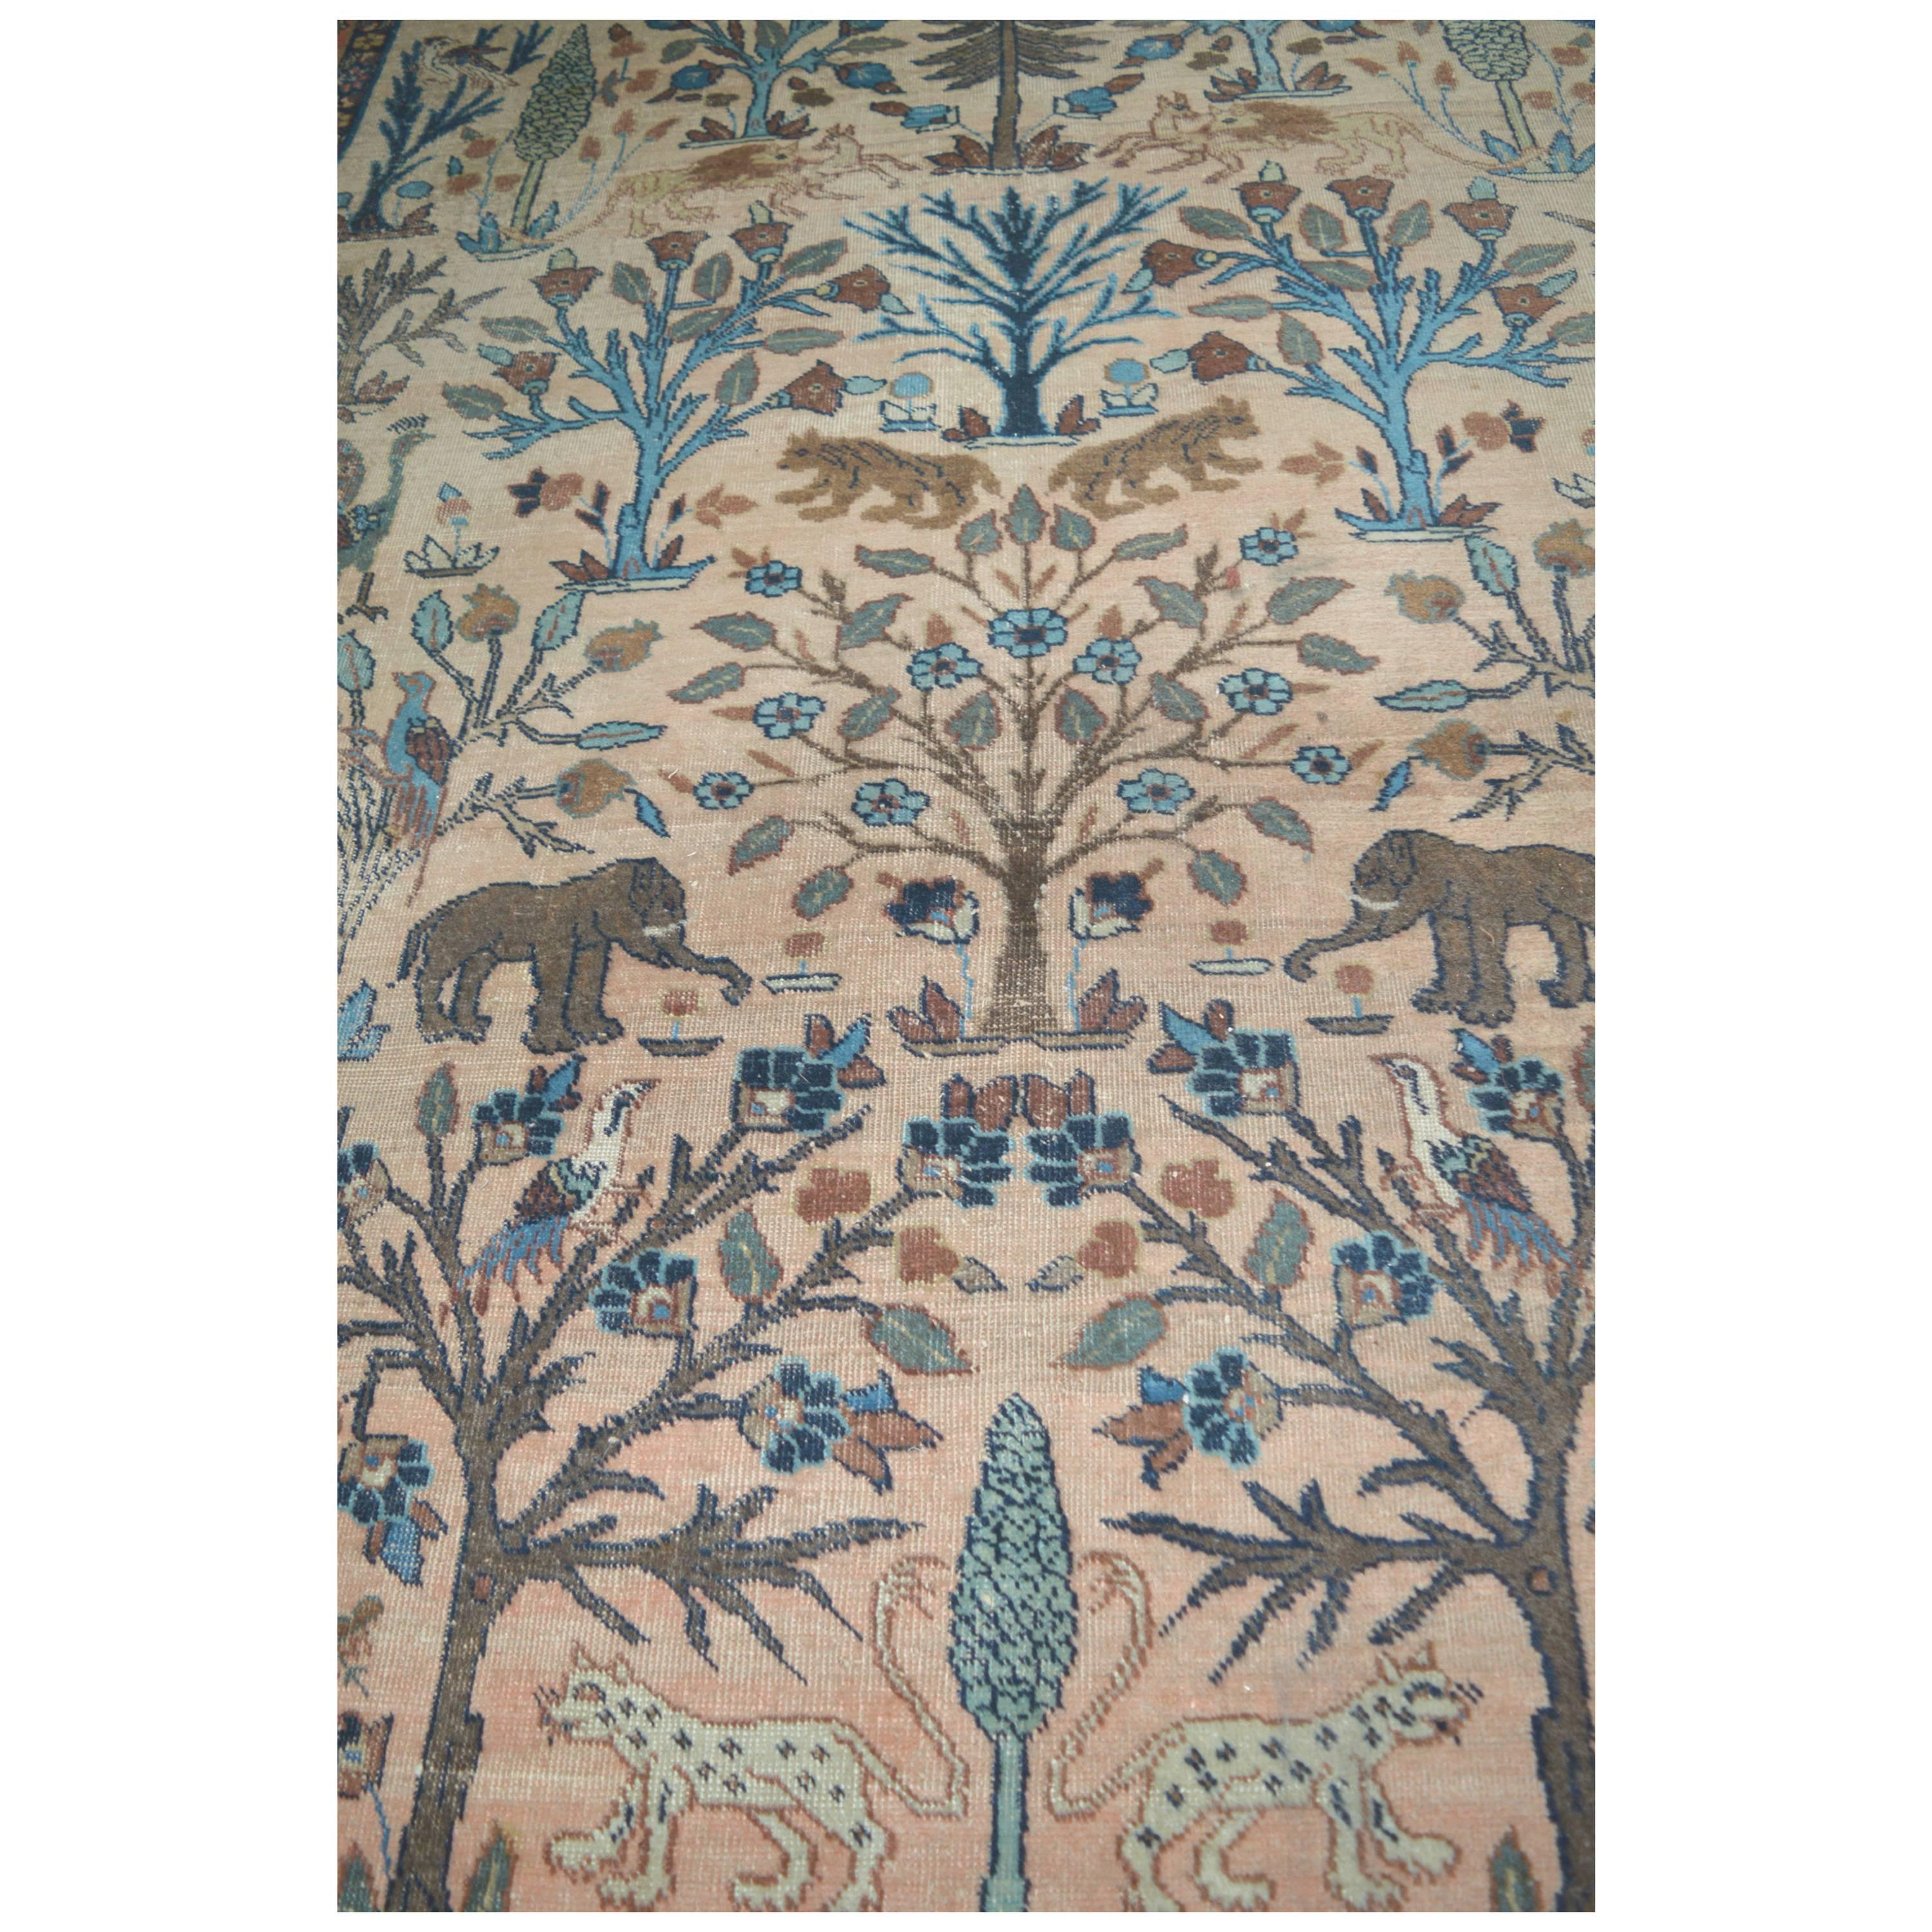 Rare Antique Persian Sultanabad "Animal Carpet"